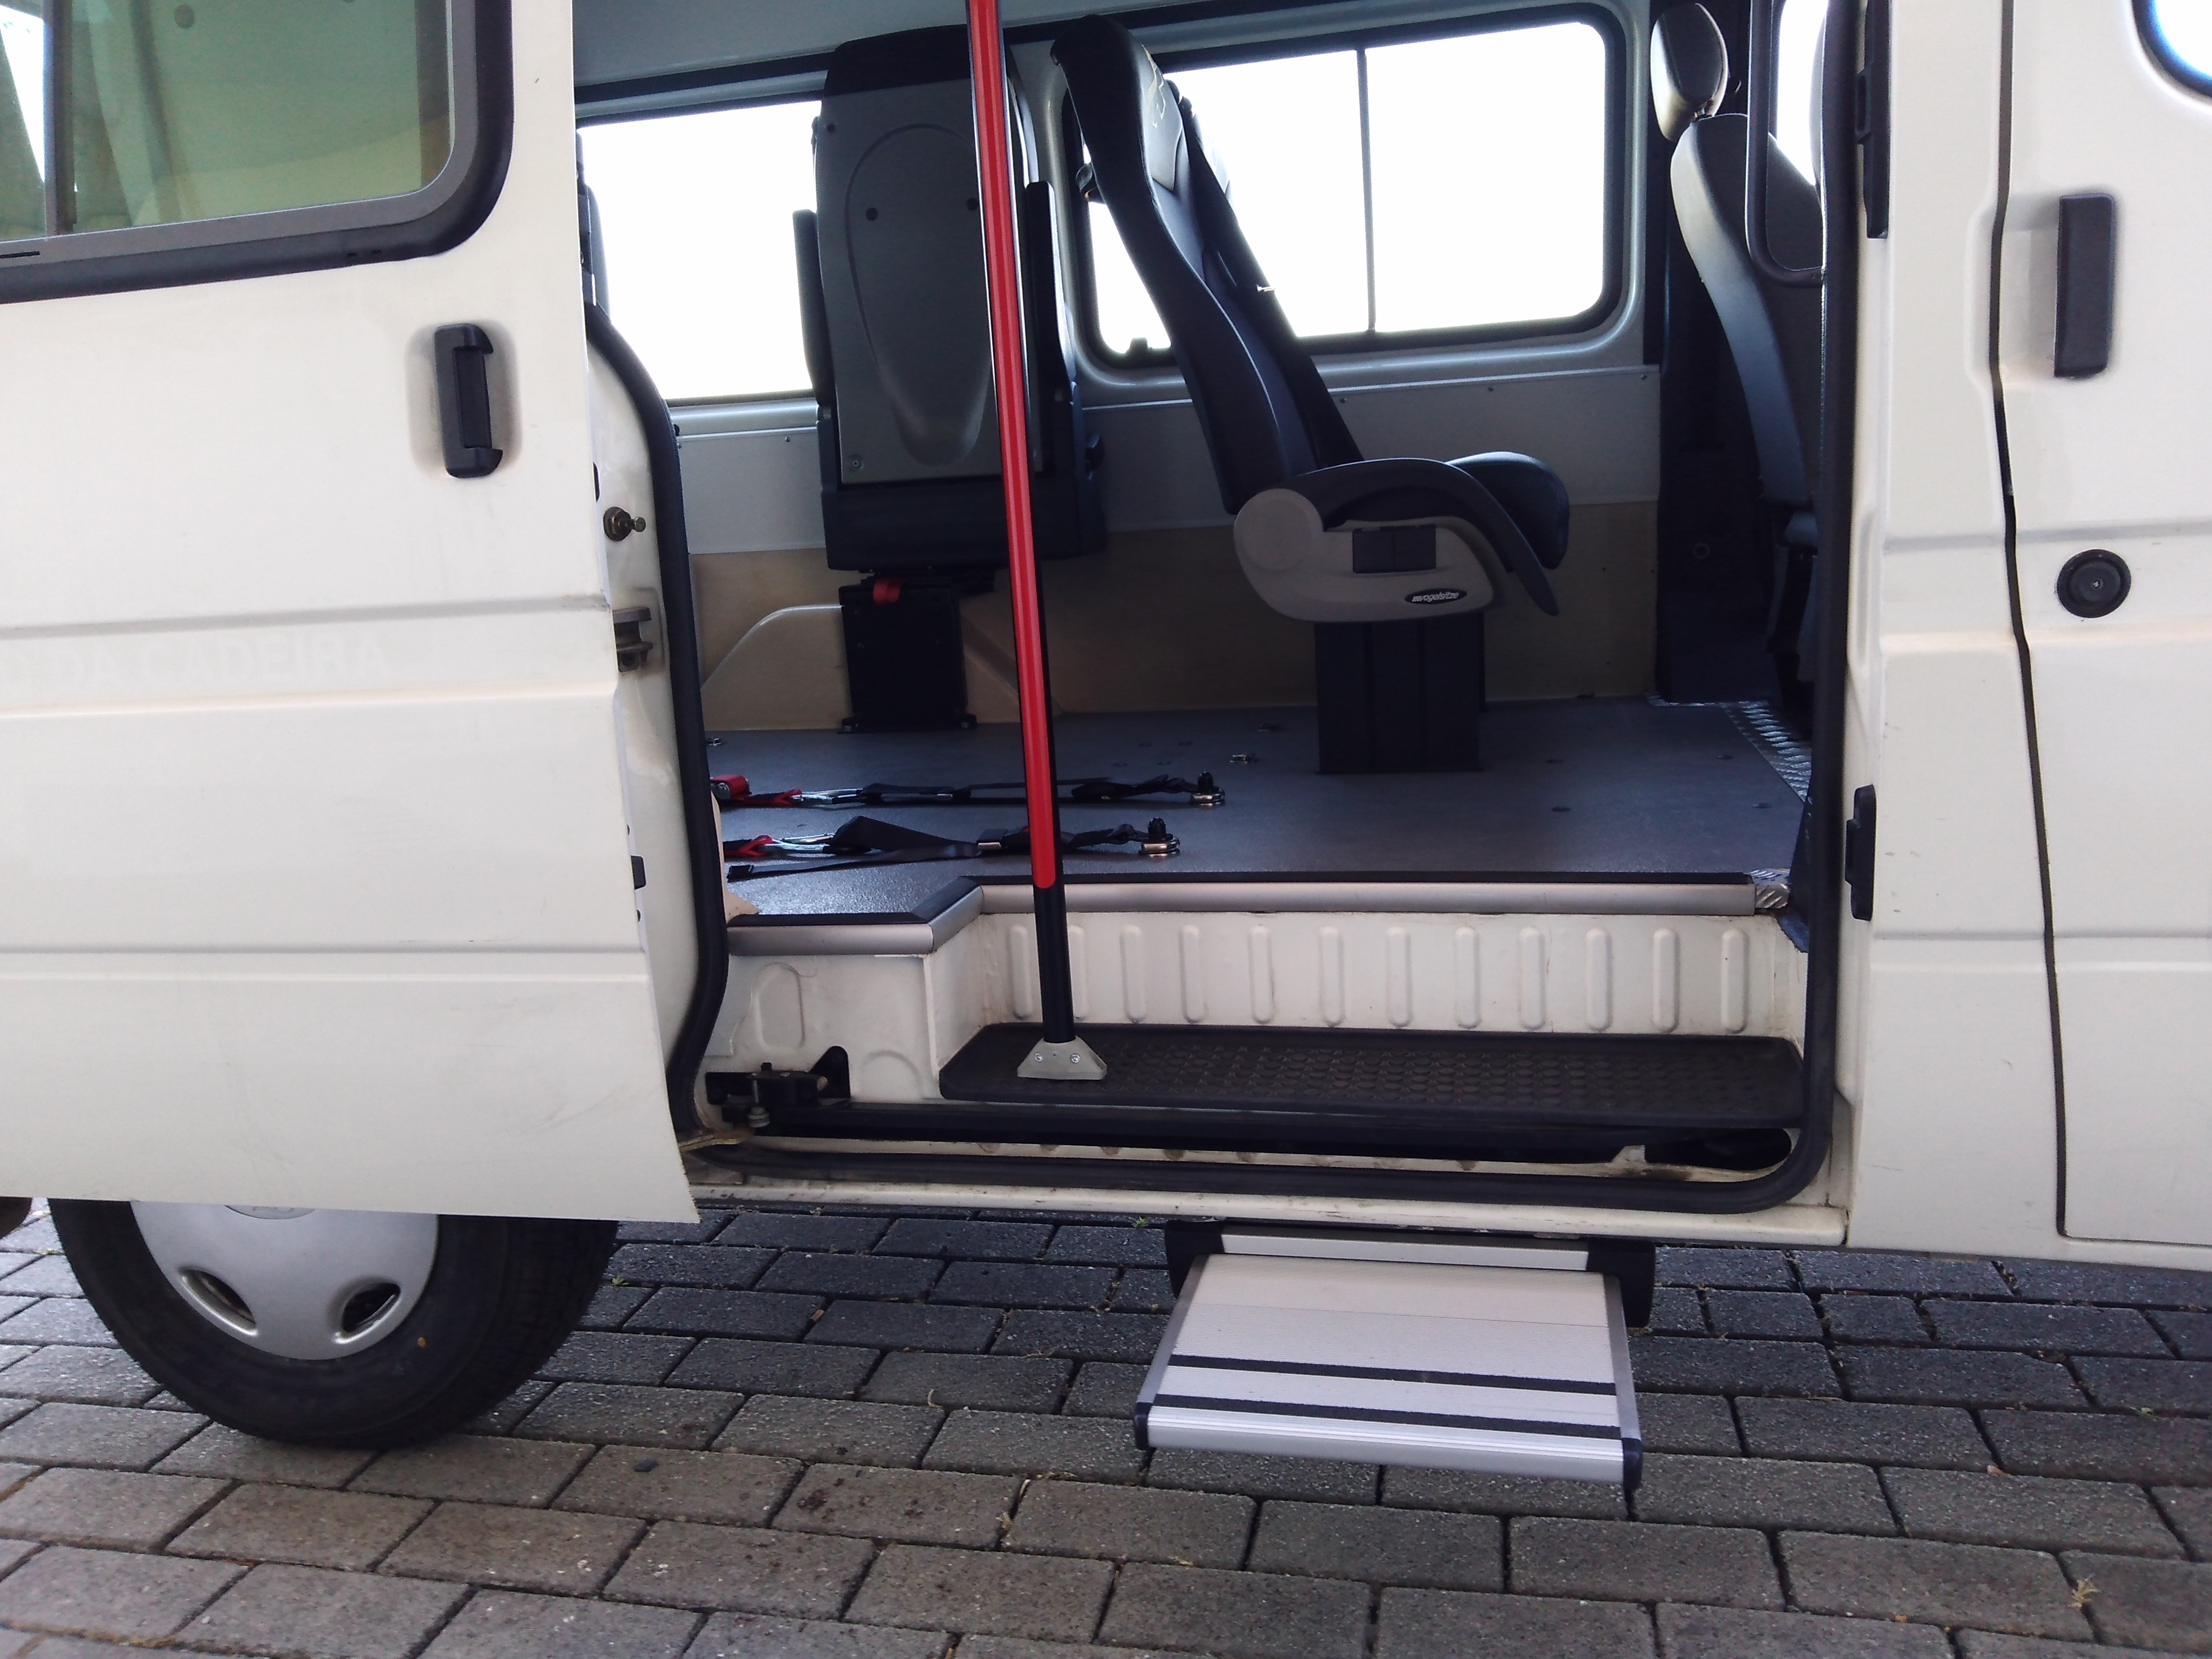 Adaptação de uma ambulância com plataforma elevatória, para transporte de utentes com mobilidade reduzida